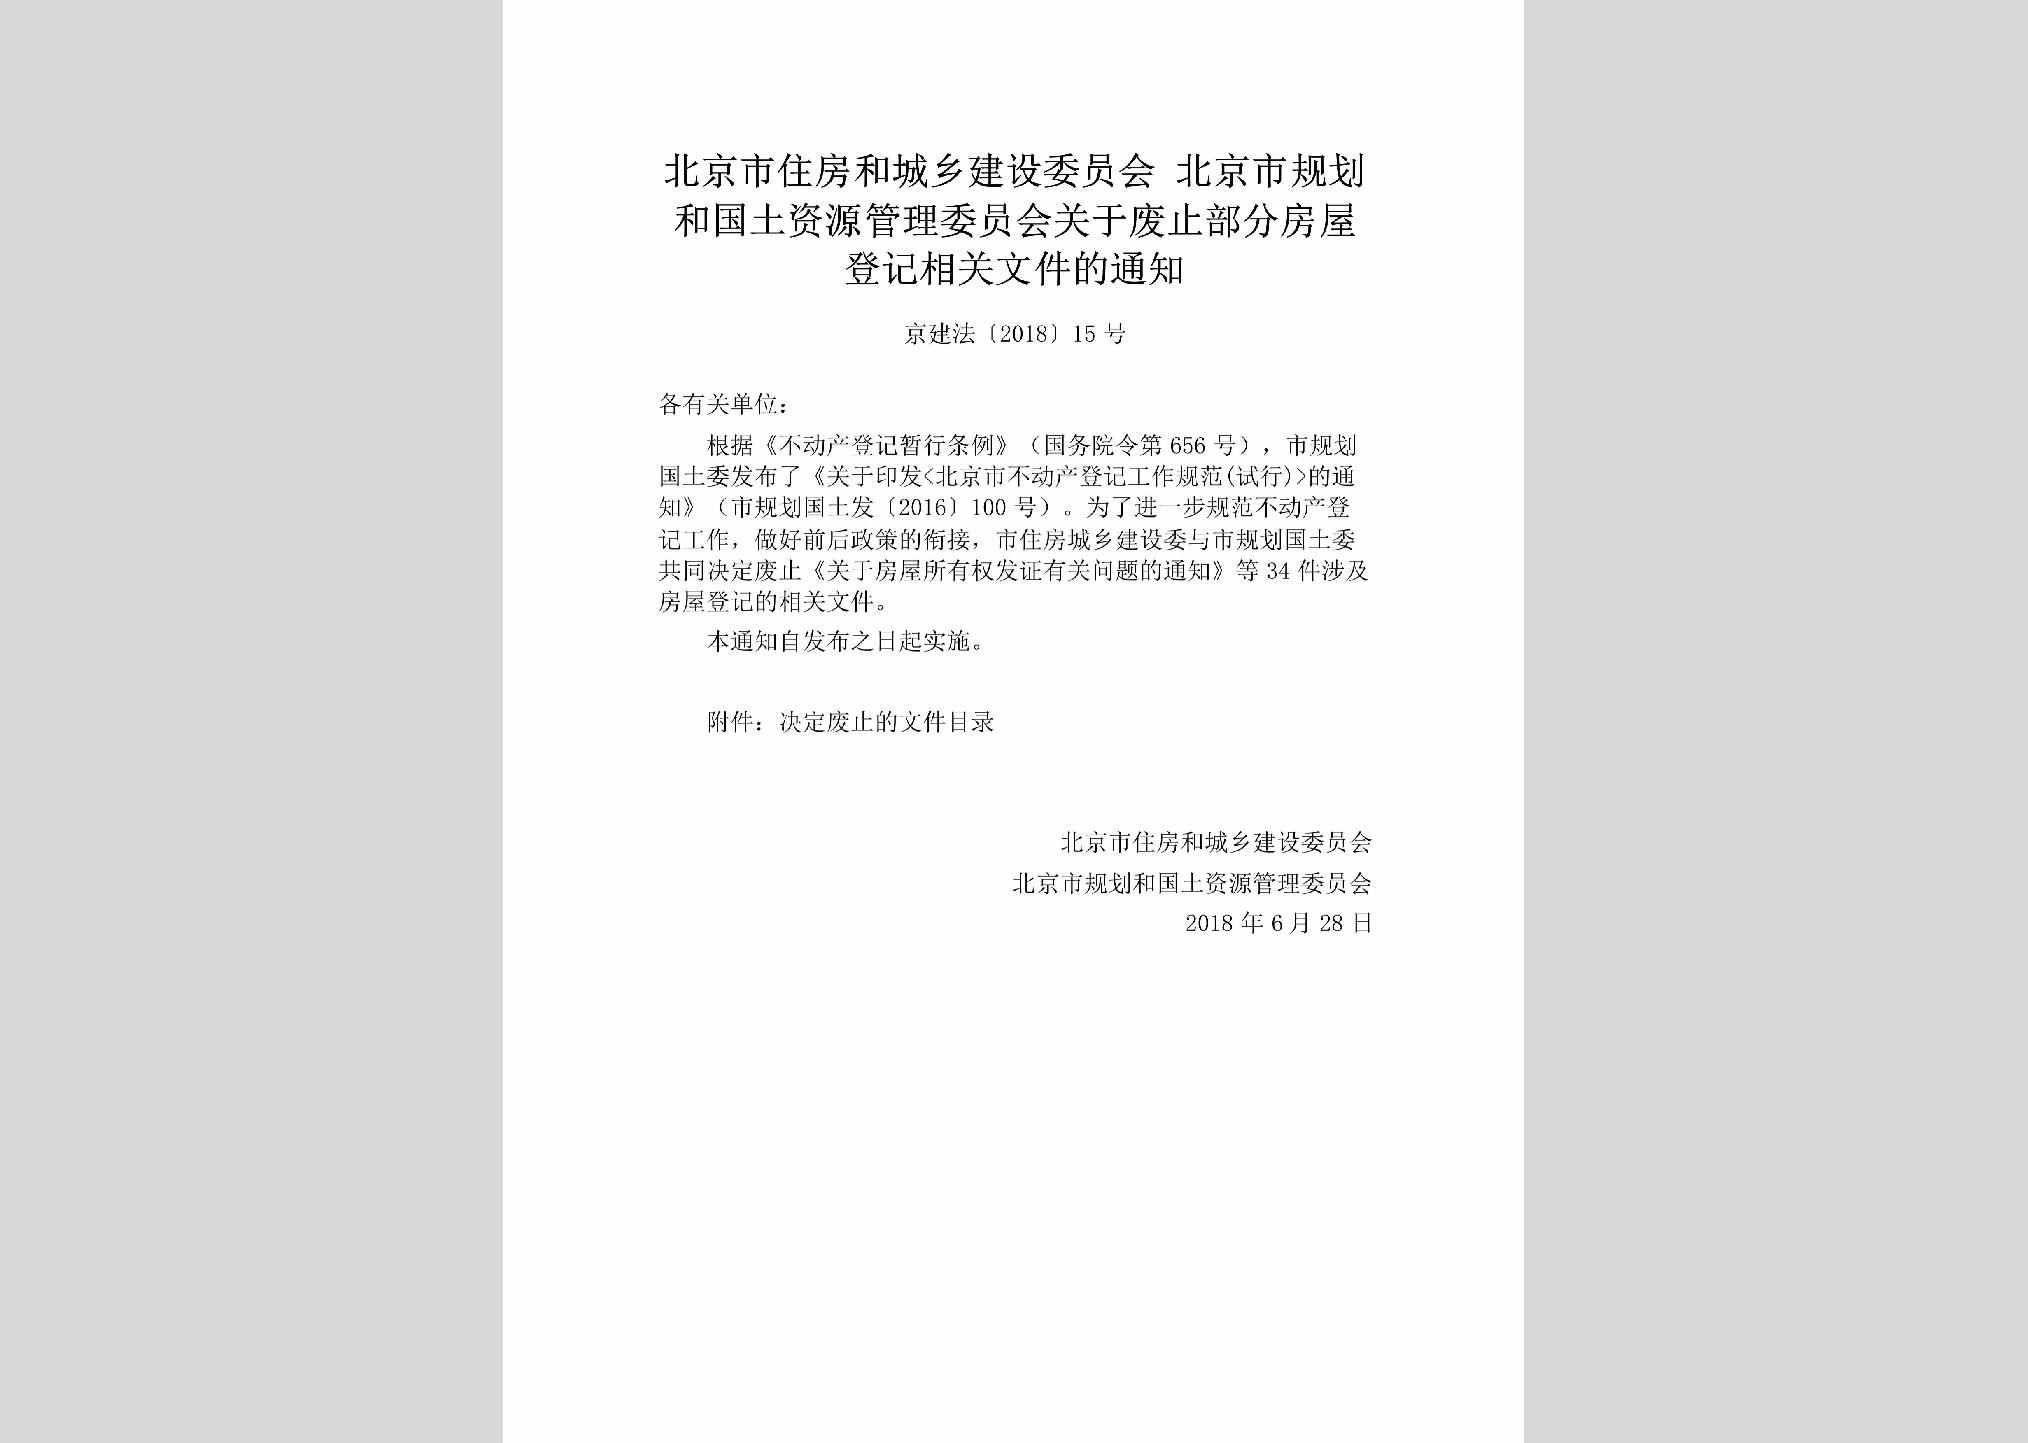 京建法[2018]15号：北京市住房和城乡建设委员会北京市规划和国土资源管理委员会关于废止部分房屋登记相关文件的通知